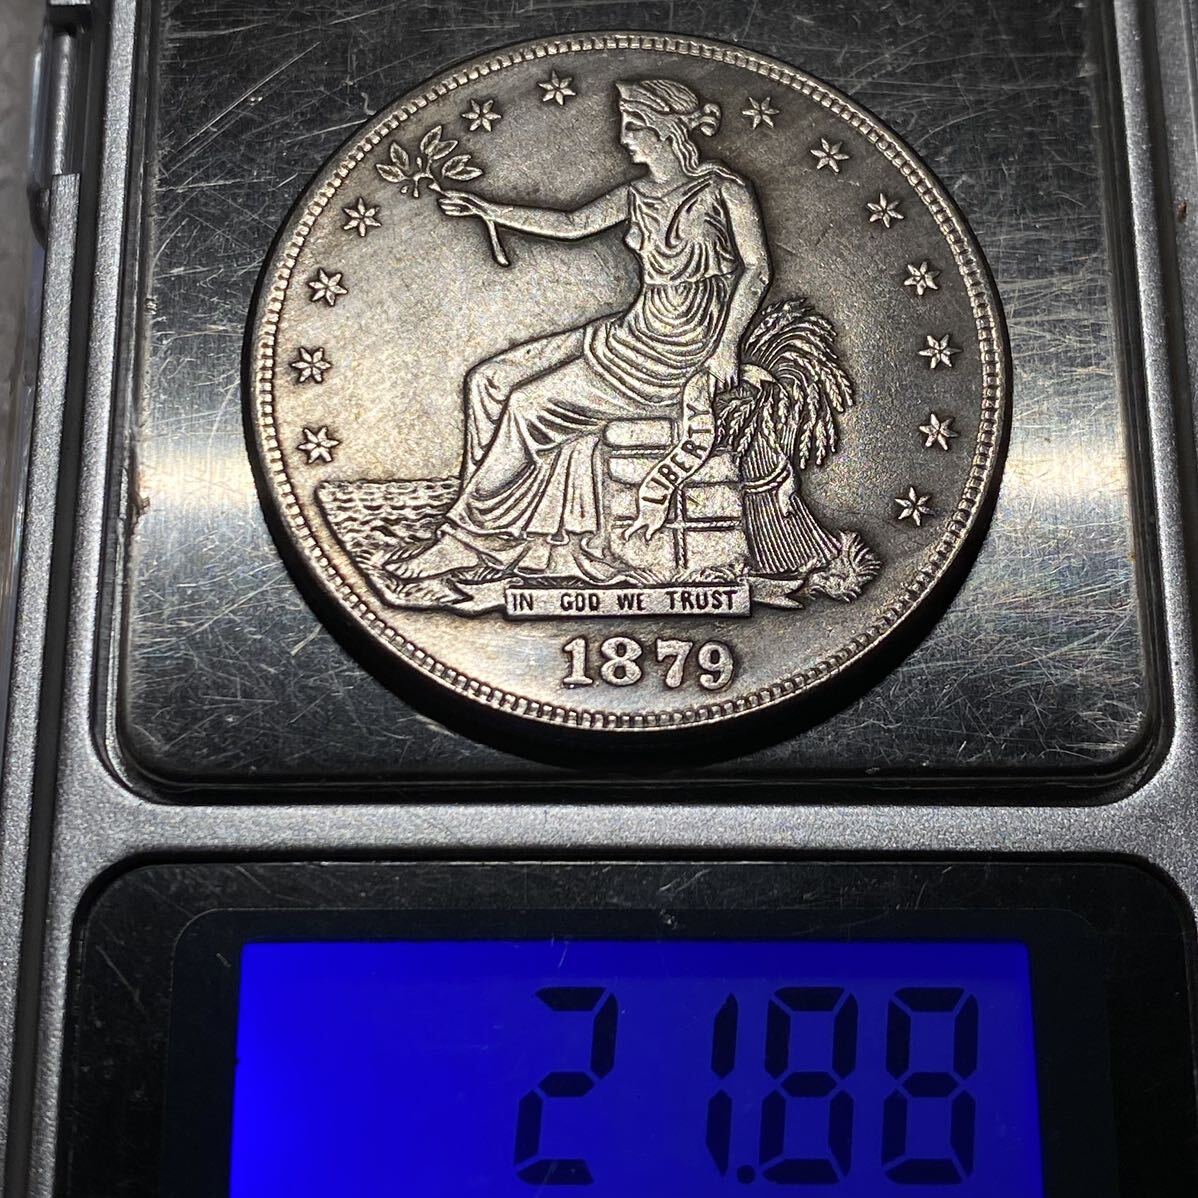 アメリカ古銭 貿易ドル 約21.88g 1879s 13つ星 リバティ 一円貨幣 硬貨骨董品コインコレクションの画像8